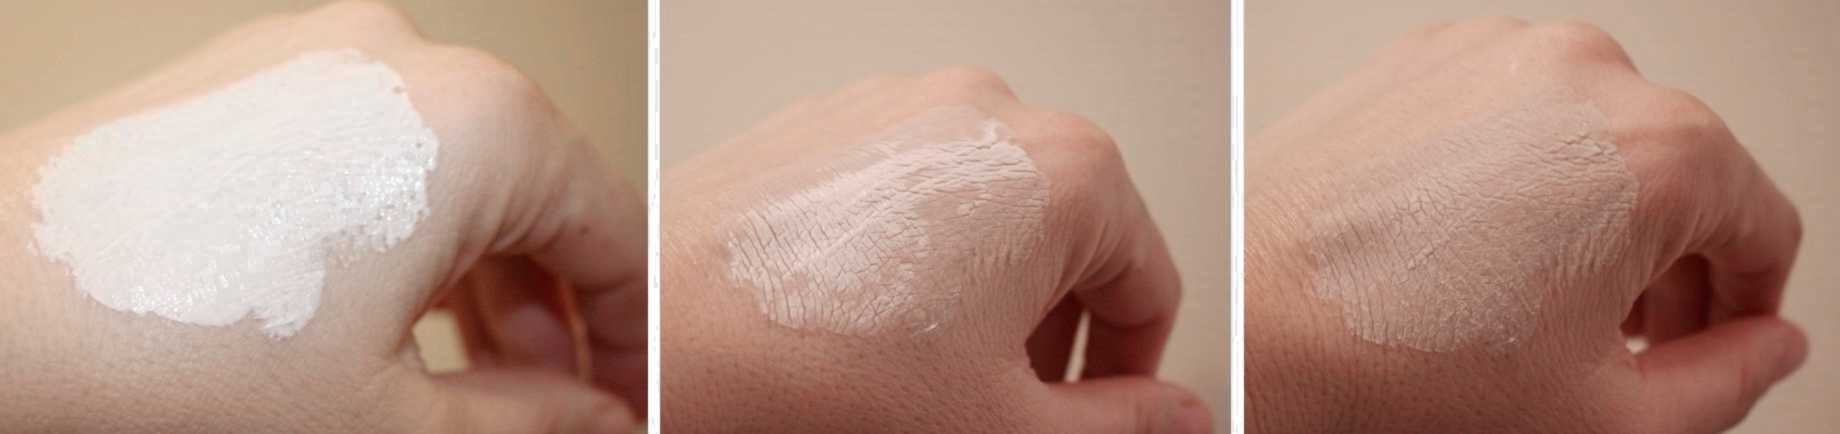 Sukin Detoxifying Clay Masque Drying Effect